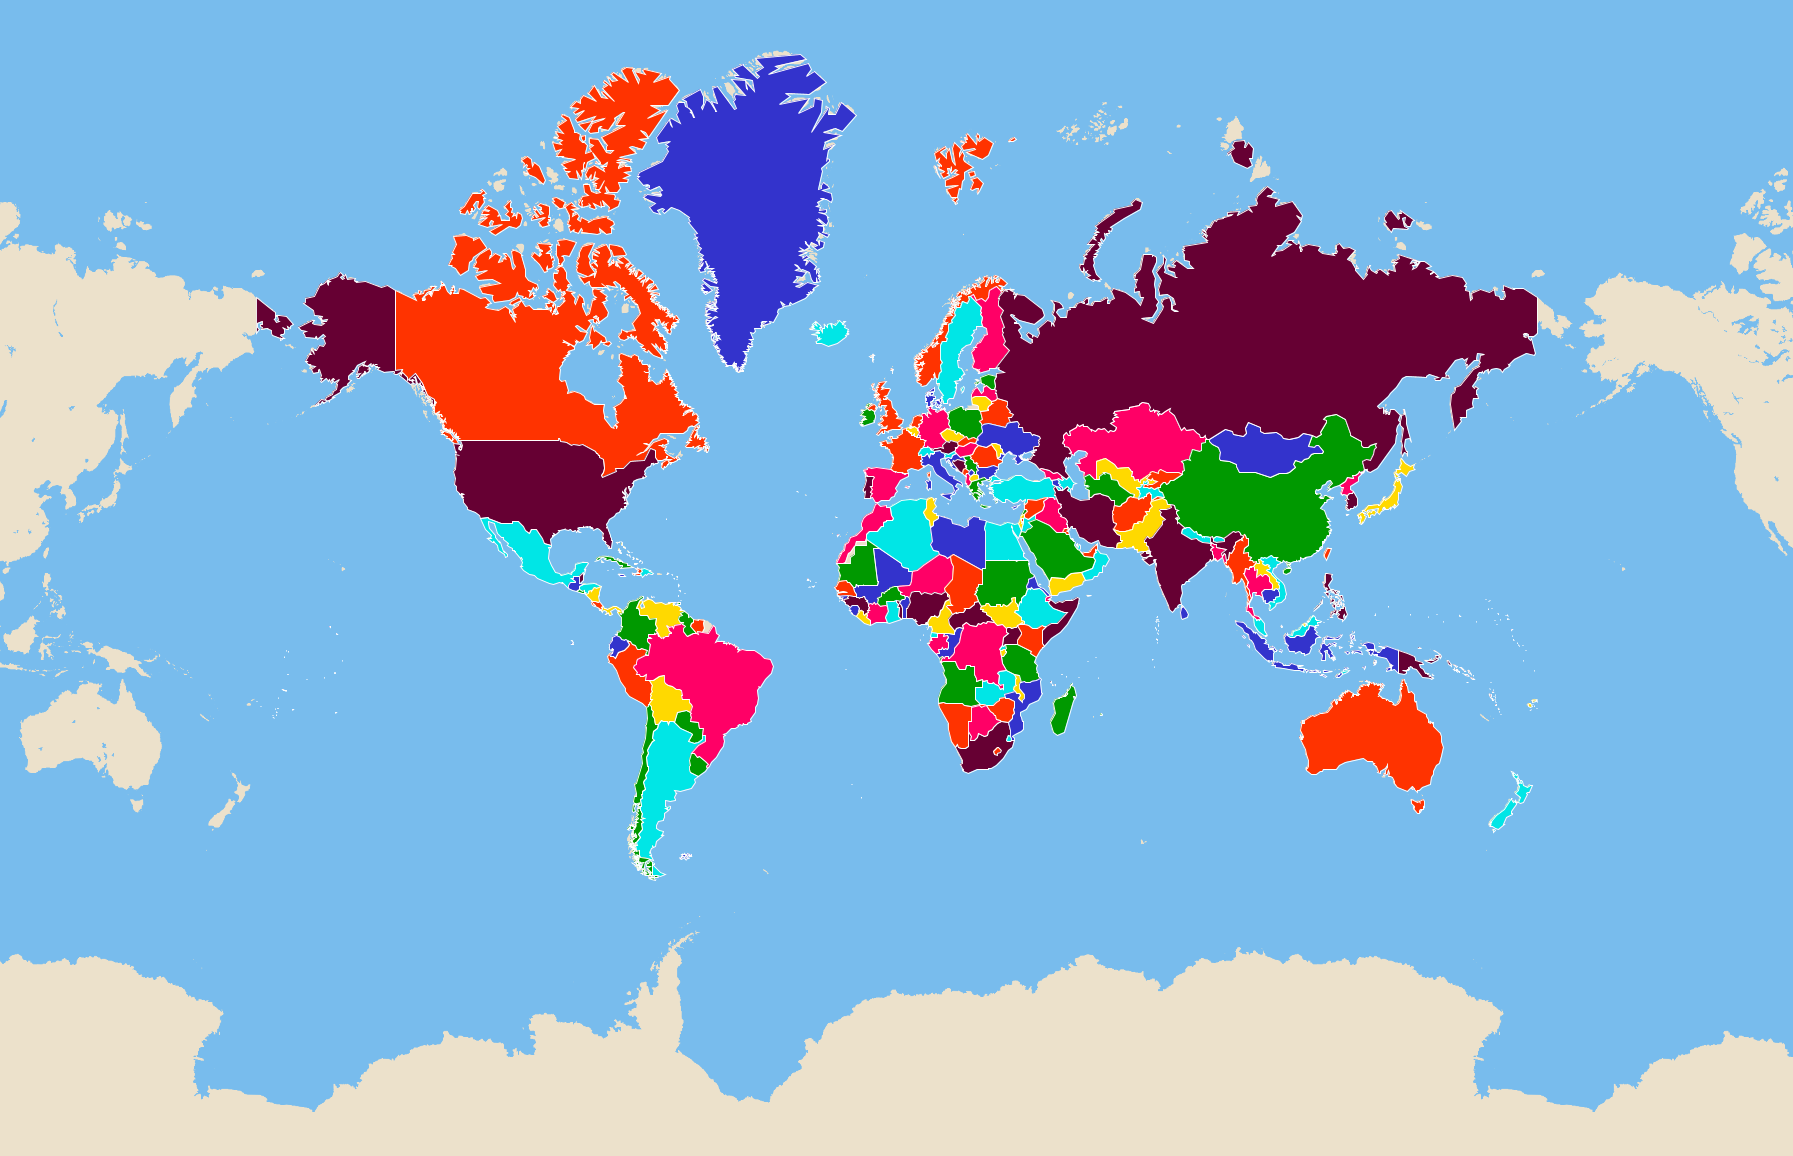 Mapa Interactivo De Países